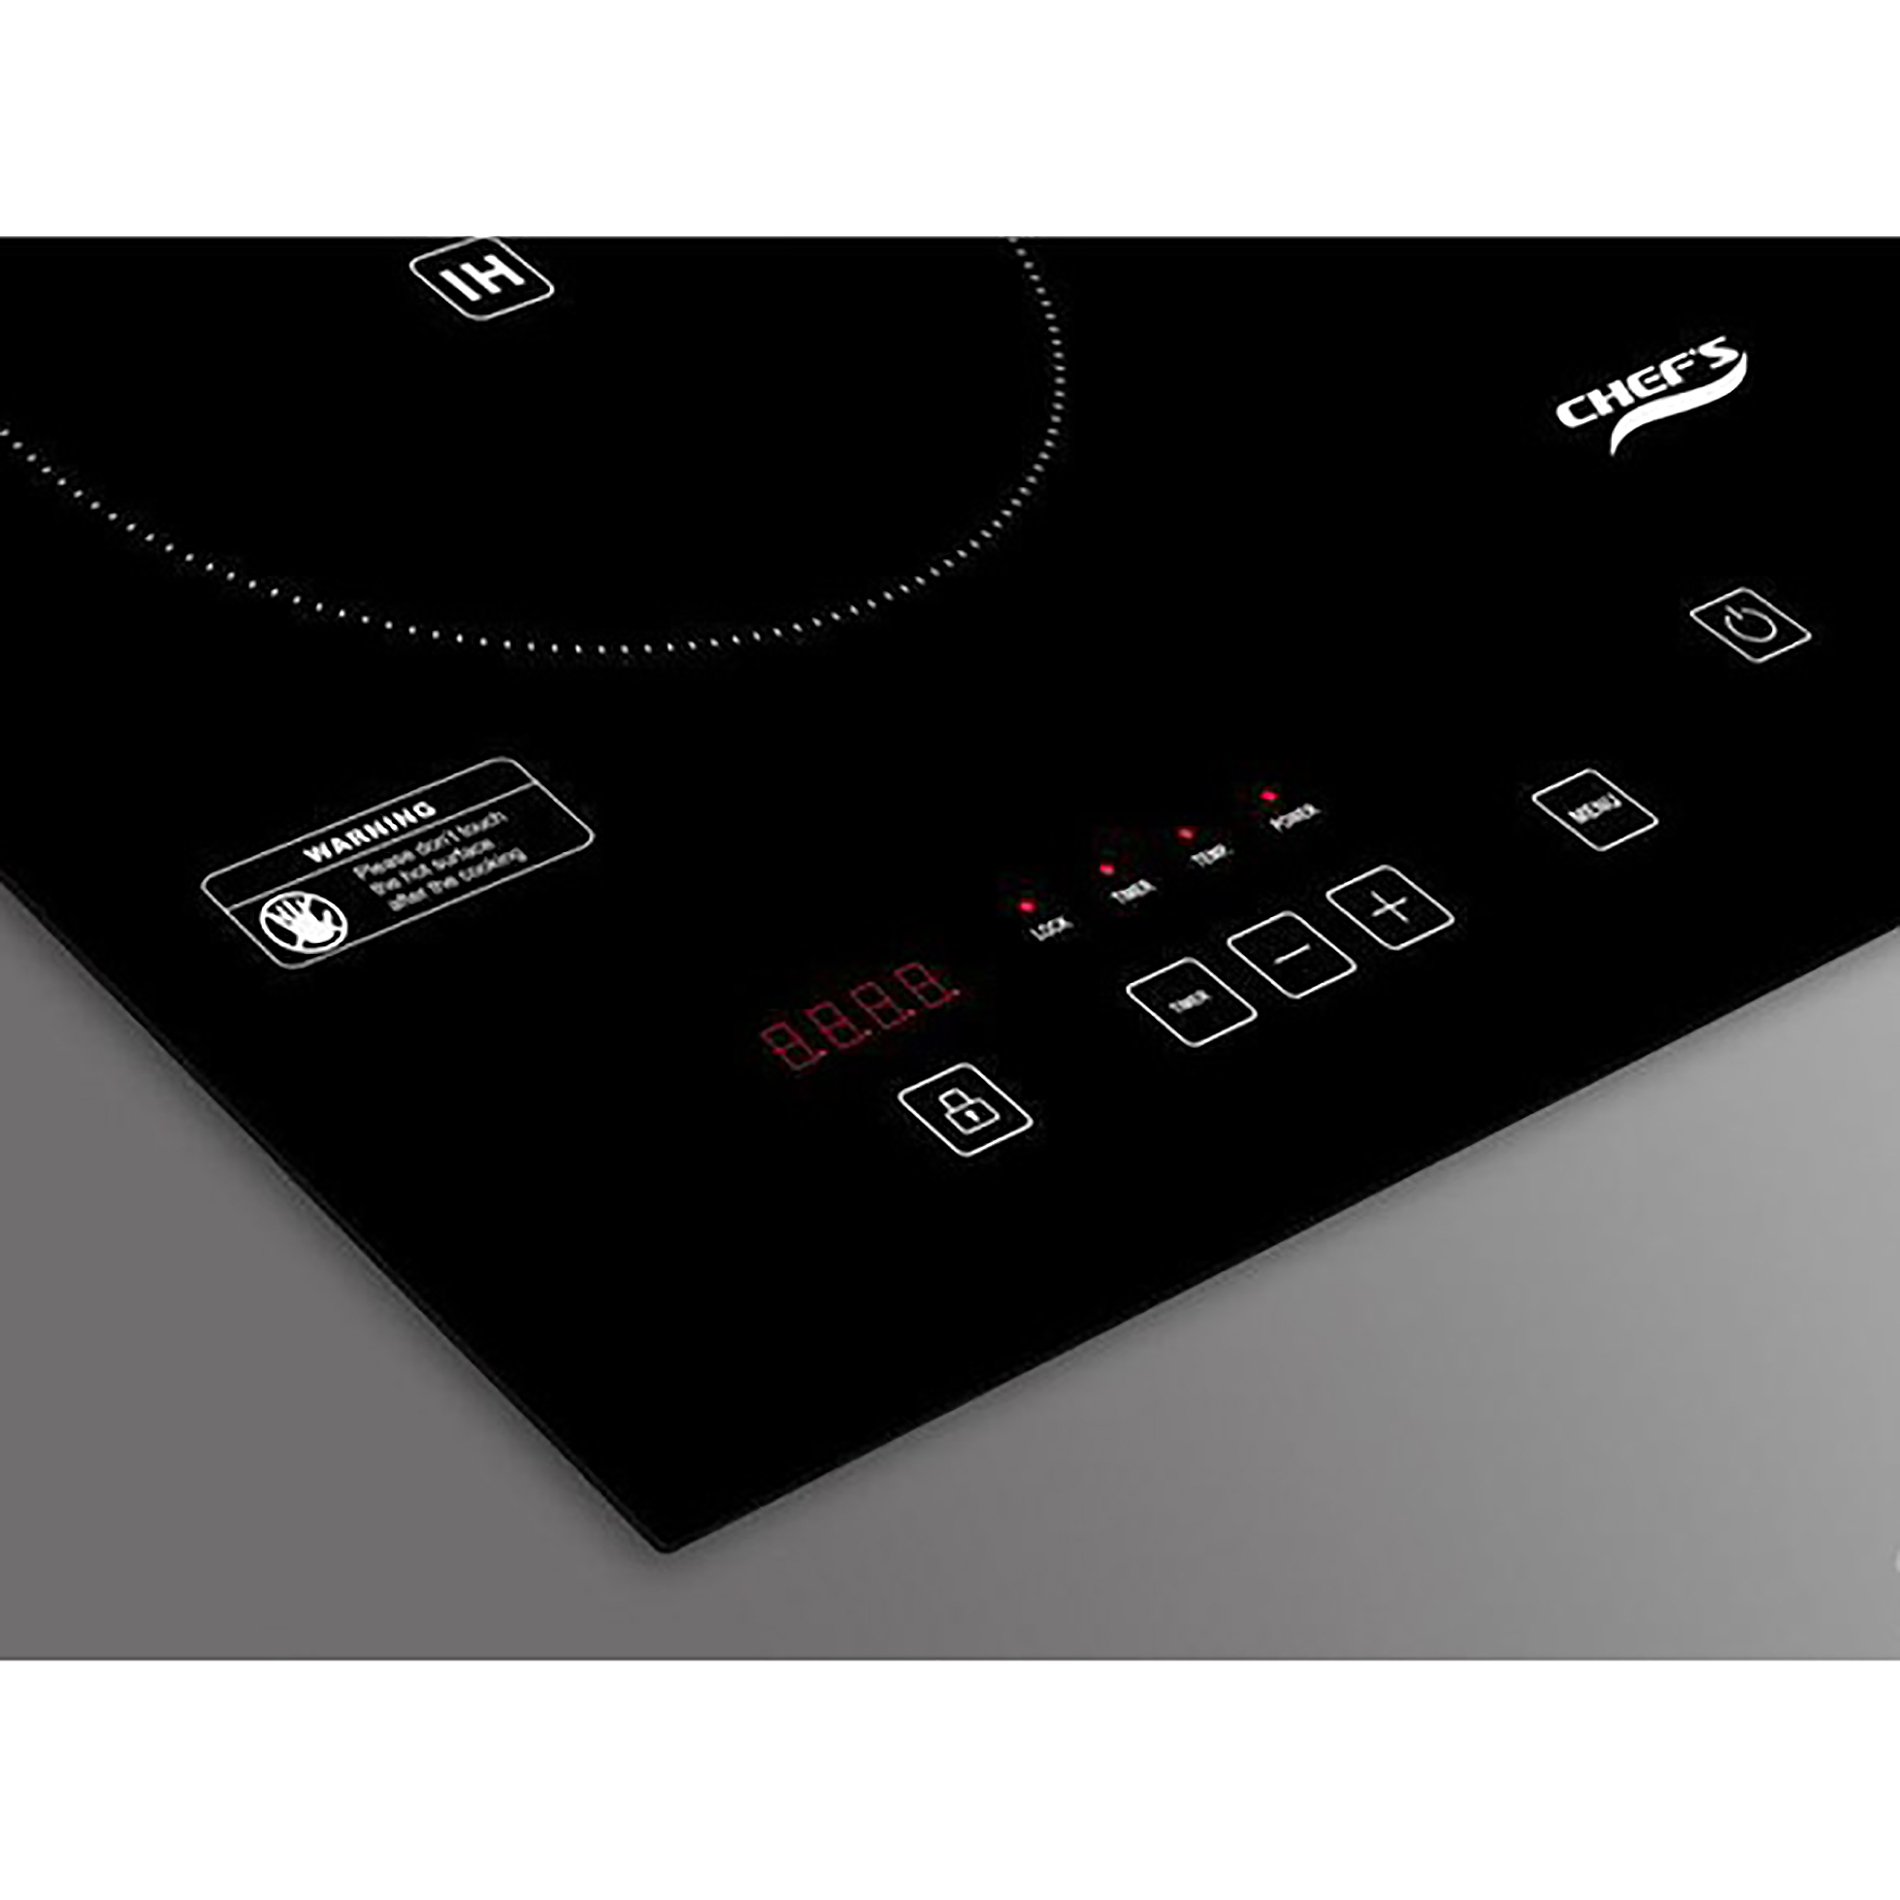 Bếp Điện Từ Đôi CHEF'S EH-MIX321 - 1 điện + 1 từ, Tự động nhận diện vùng nấu, Cảm biến an toàn